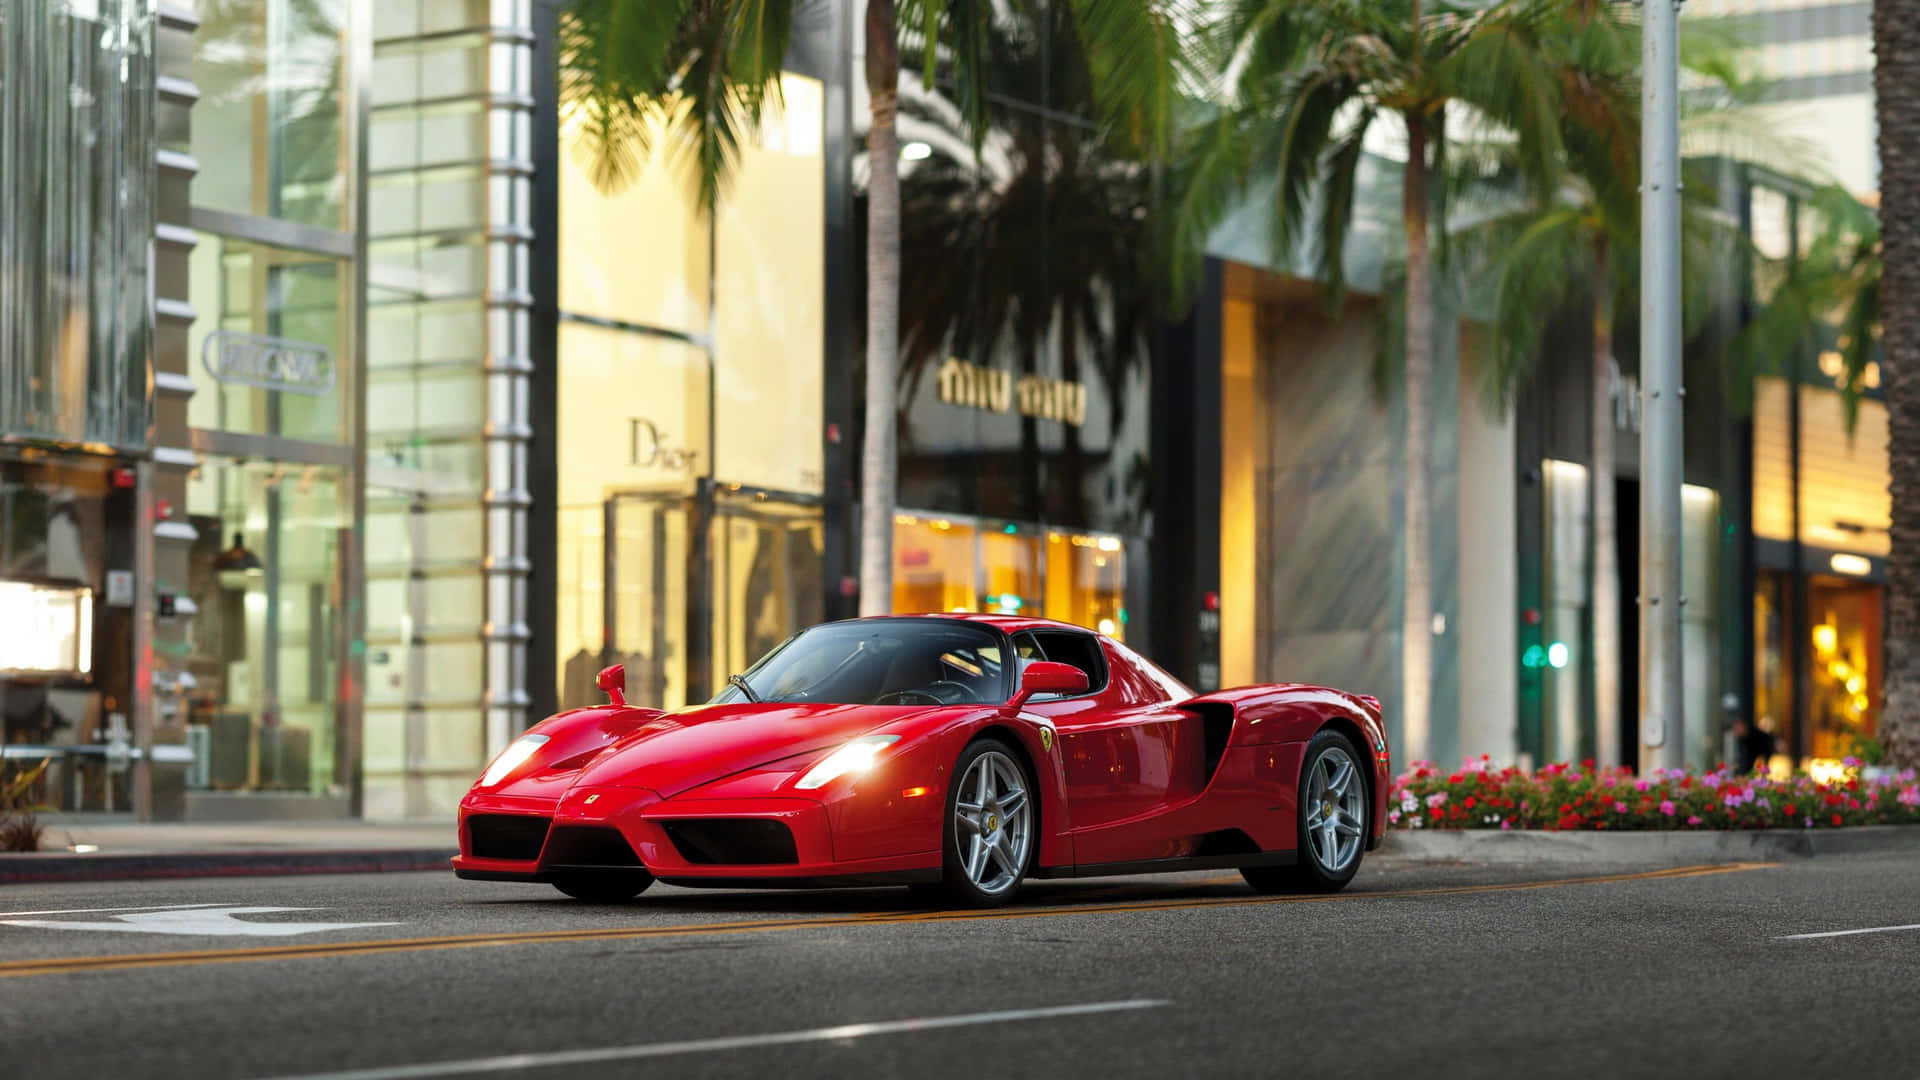 Caption: Stunning Ferrari Enzo in Motion Wallpaper